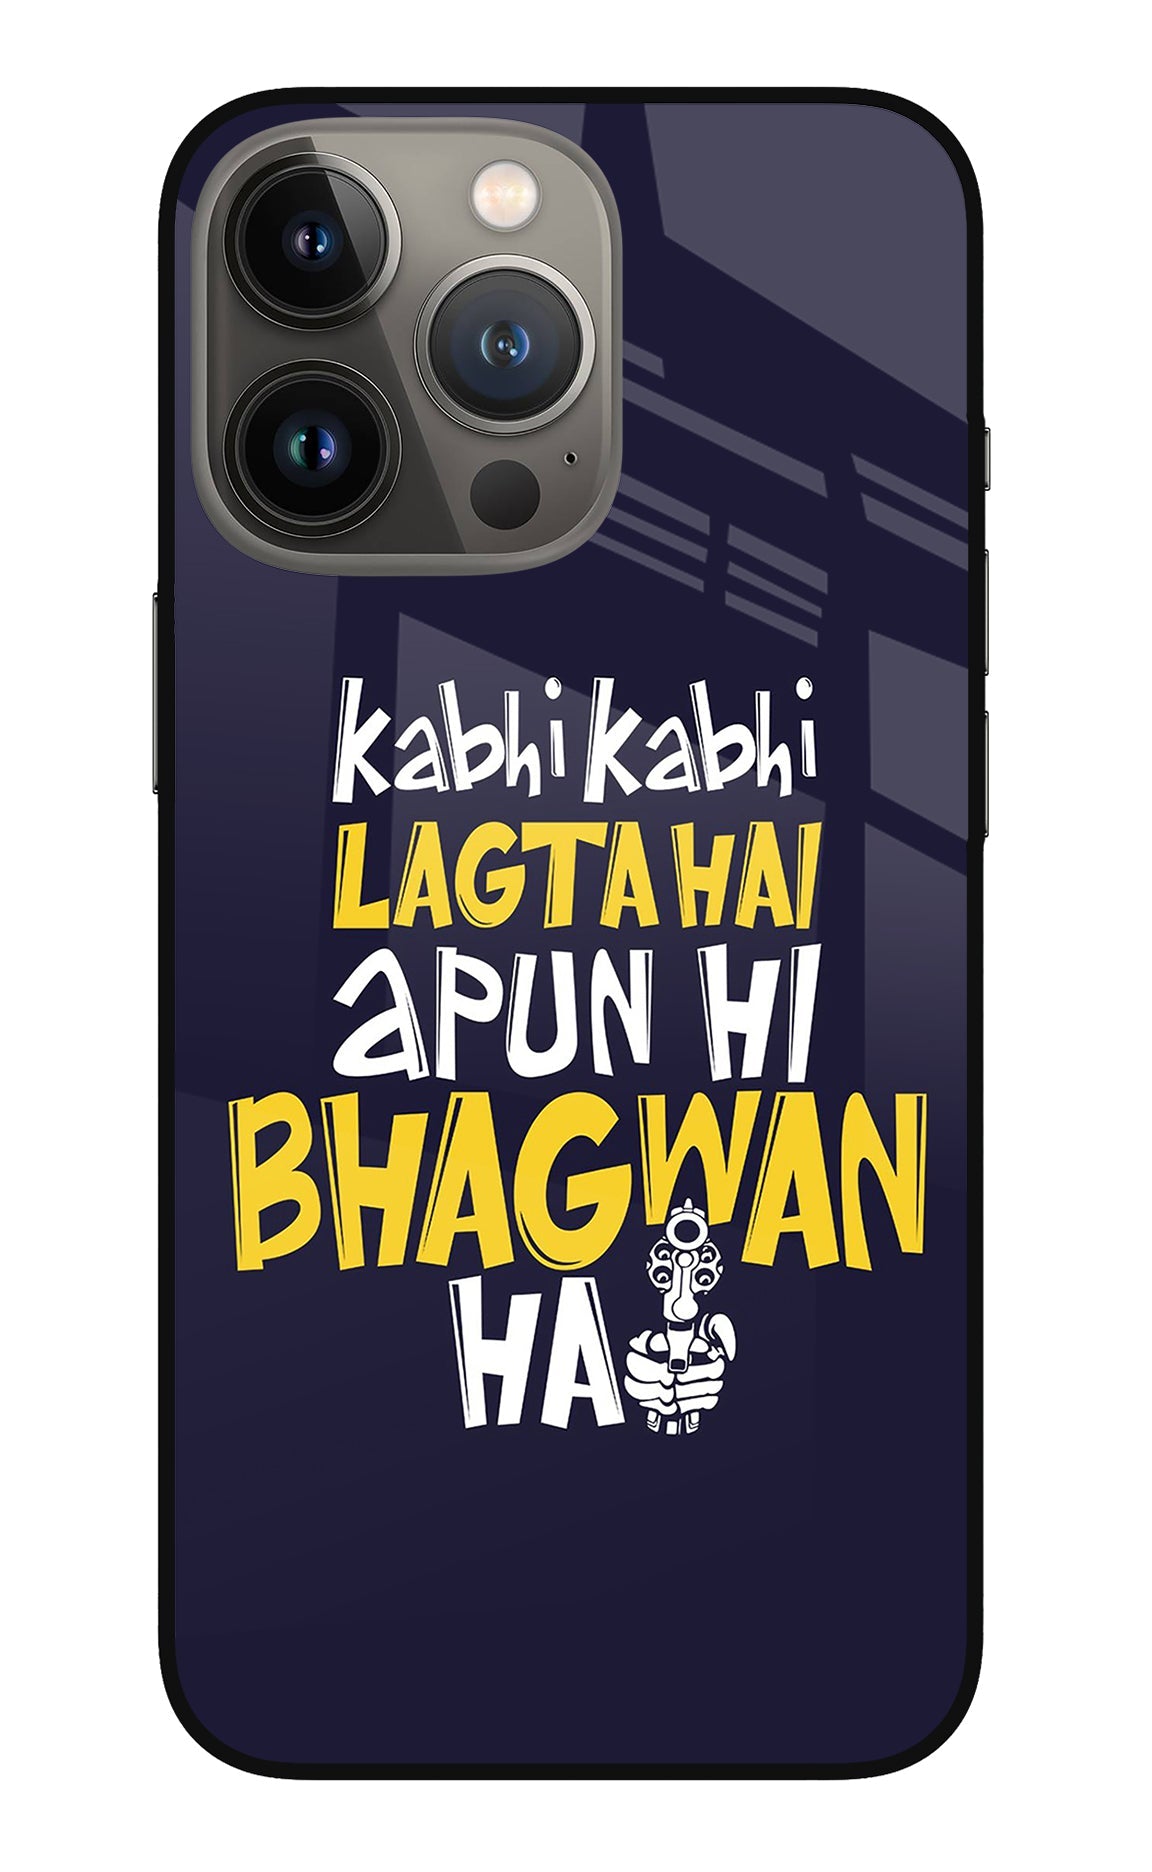 Kabhi Kabhi Lagta Hai Apun Hi Bhagwan Hai iPhone 13 Pro Max Glass Case